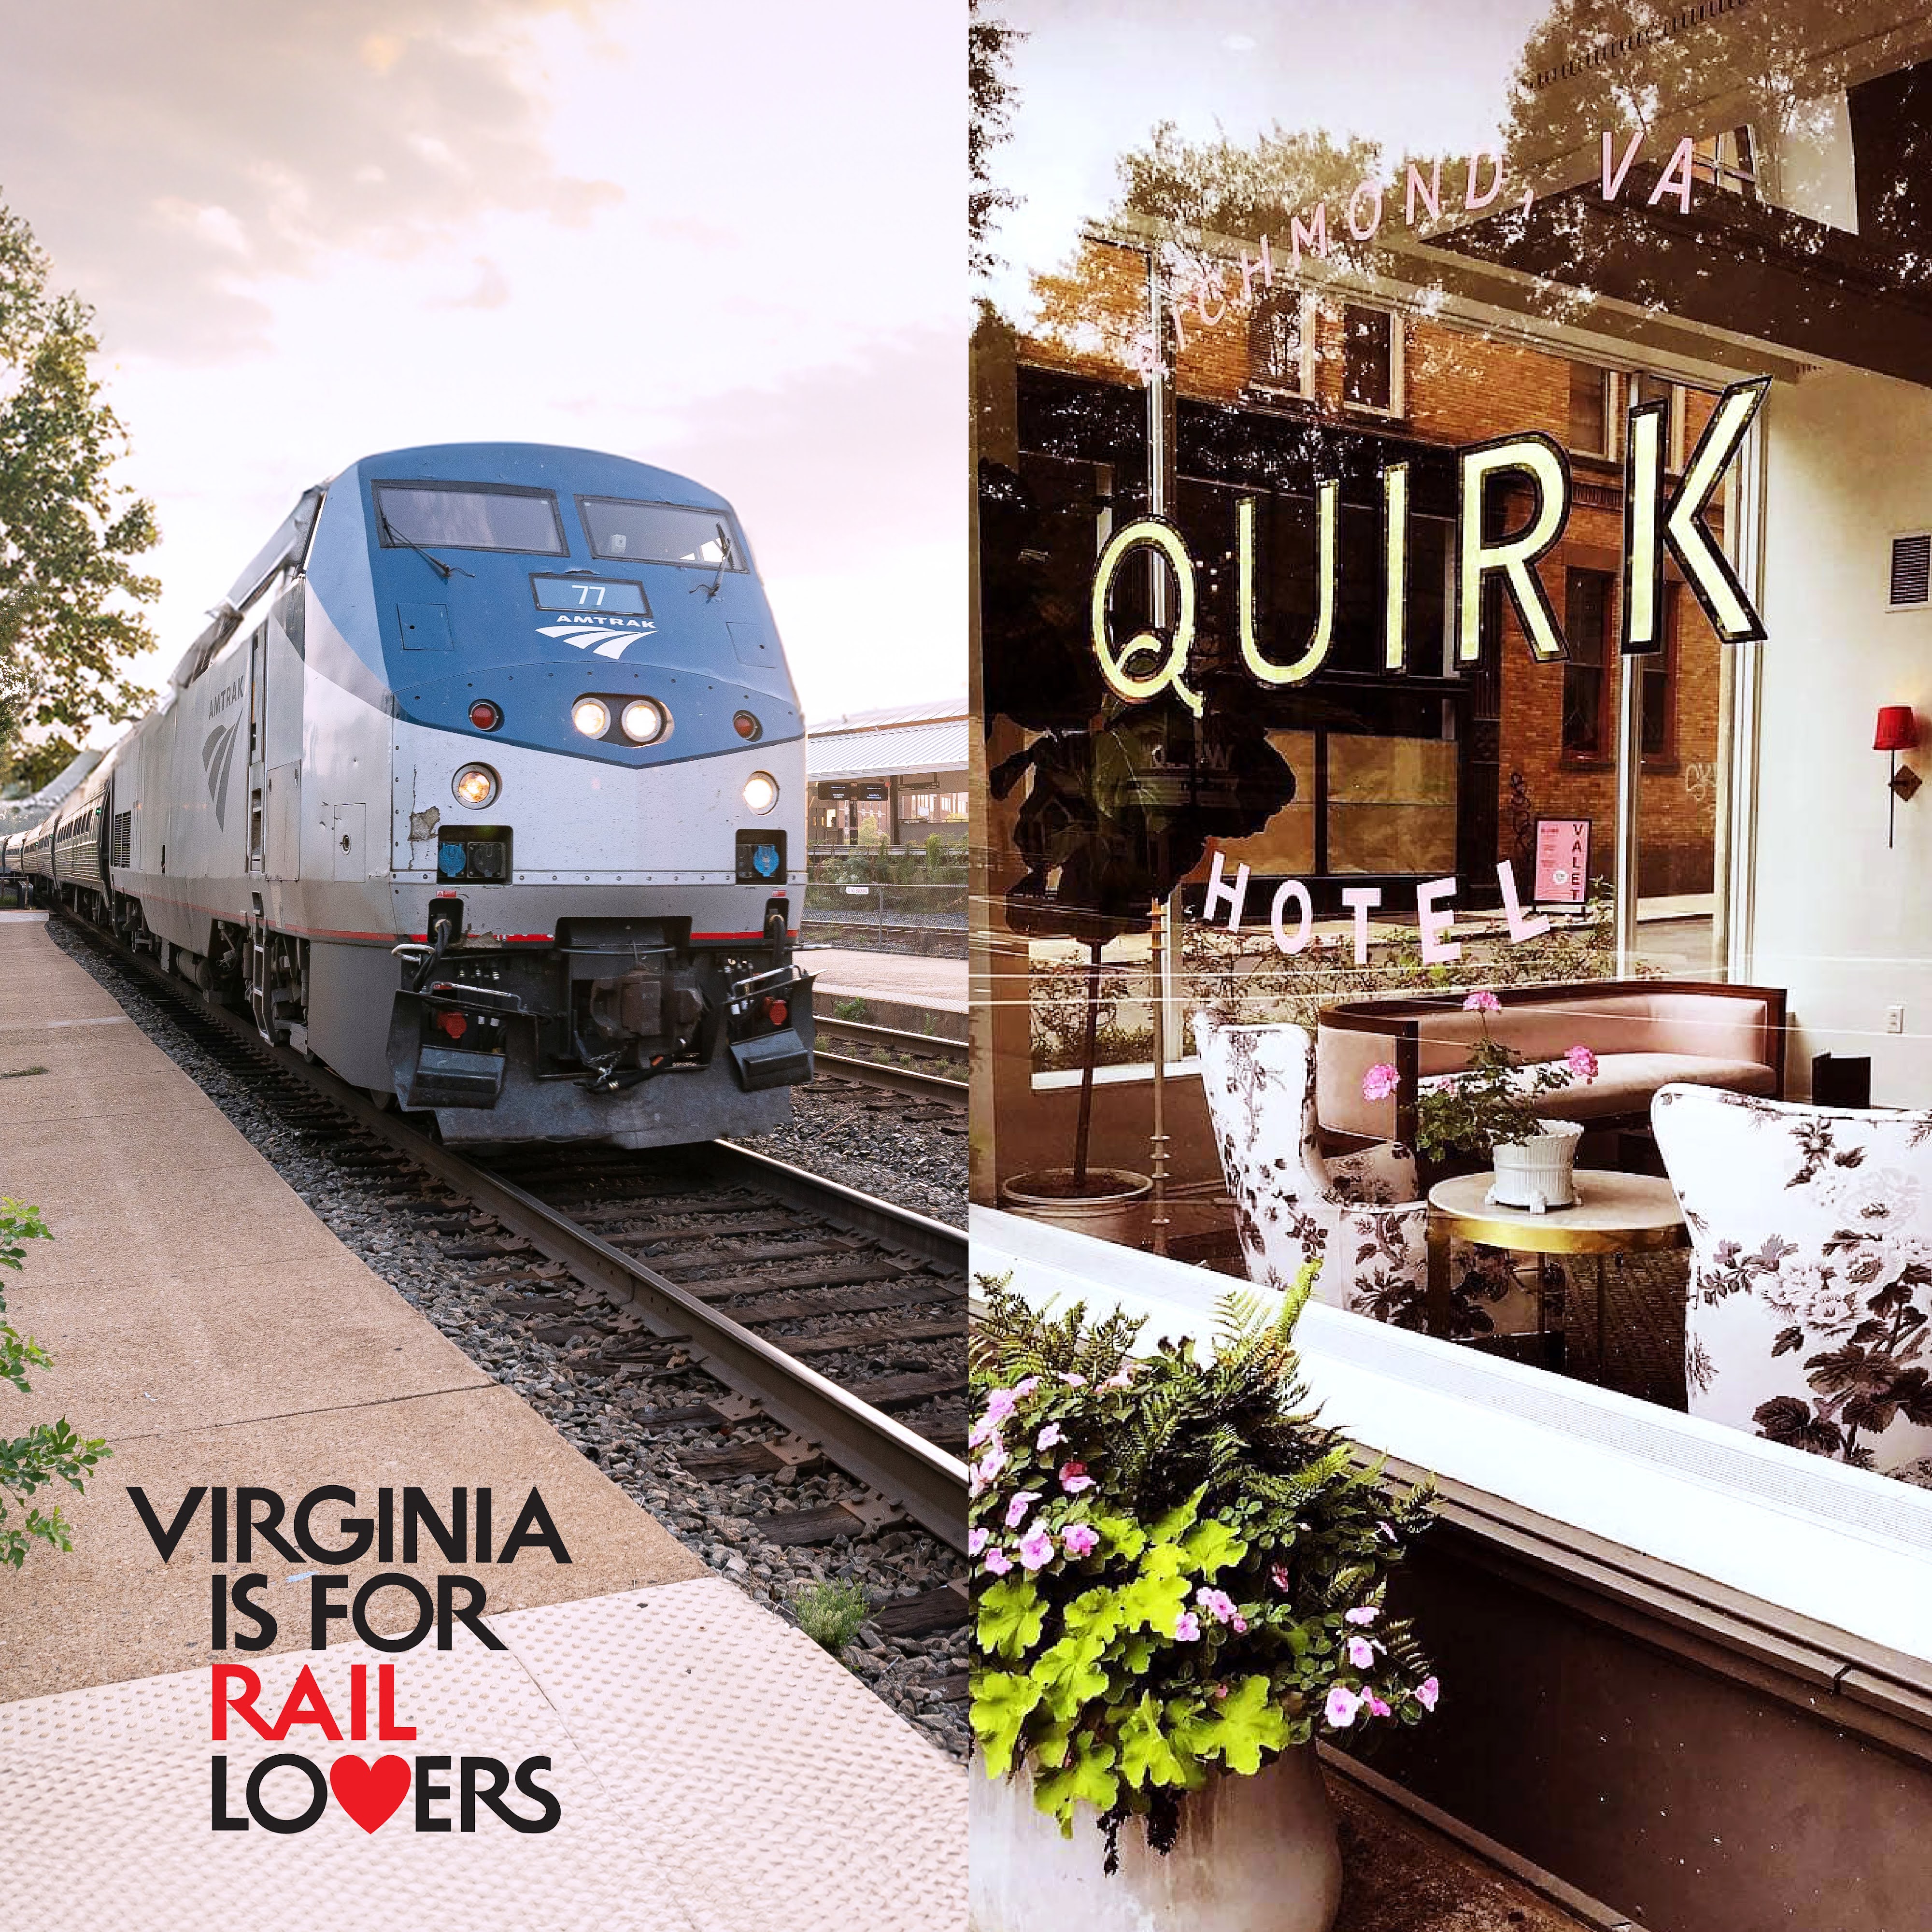 Amtrak火车和Quirk-Hotels并列图片